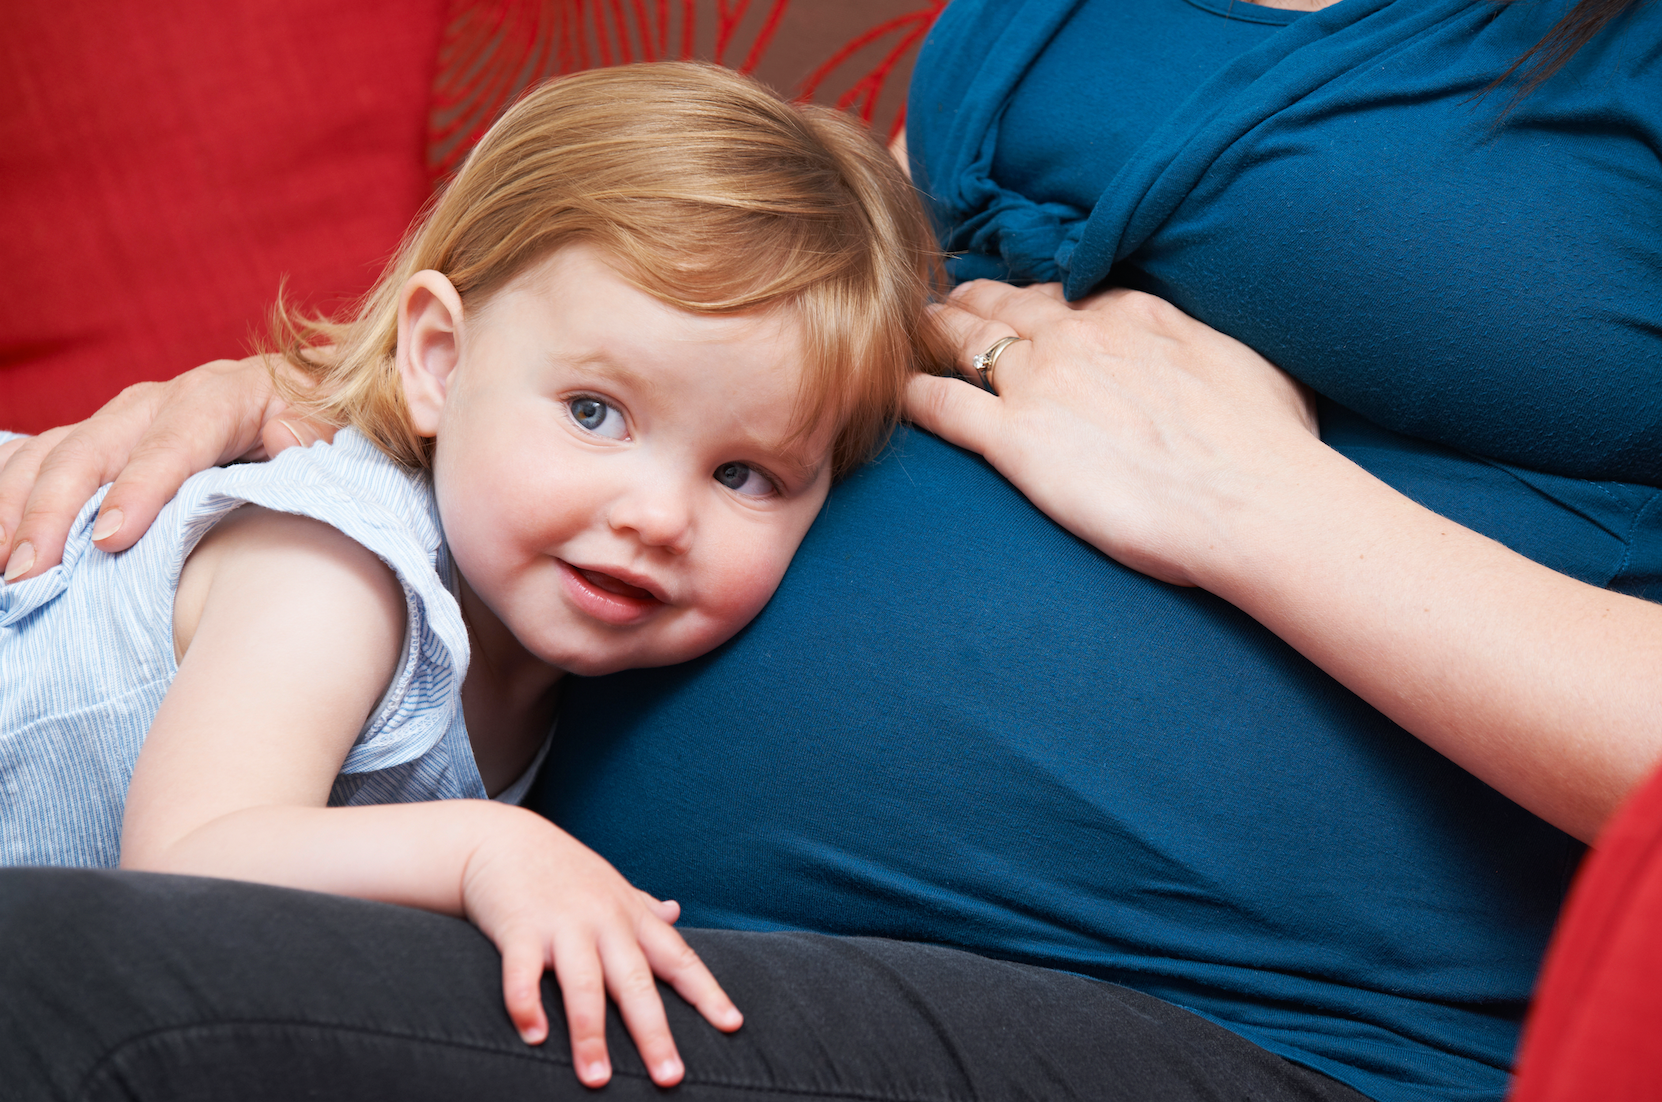 Are short interpregnancy intervals risky for older mothers?